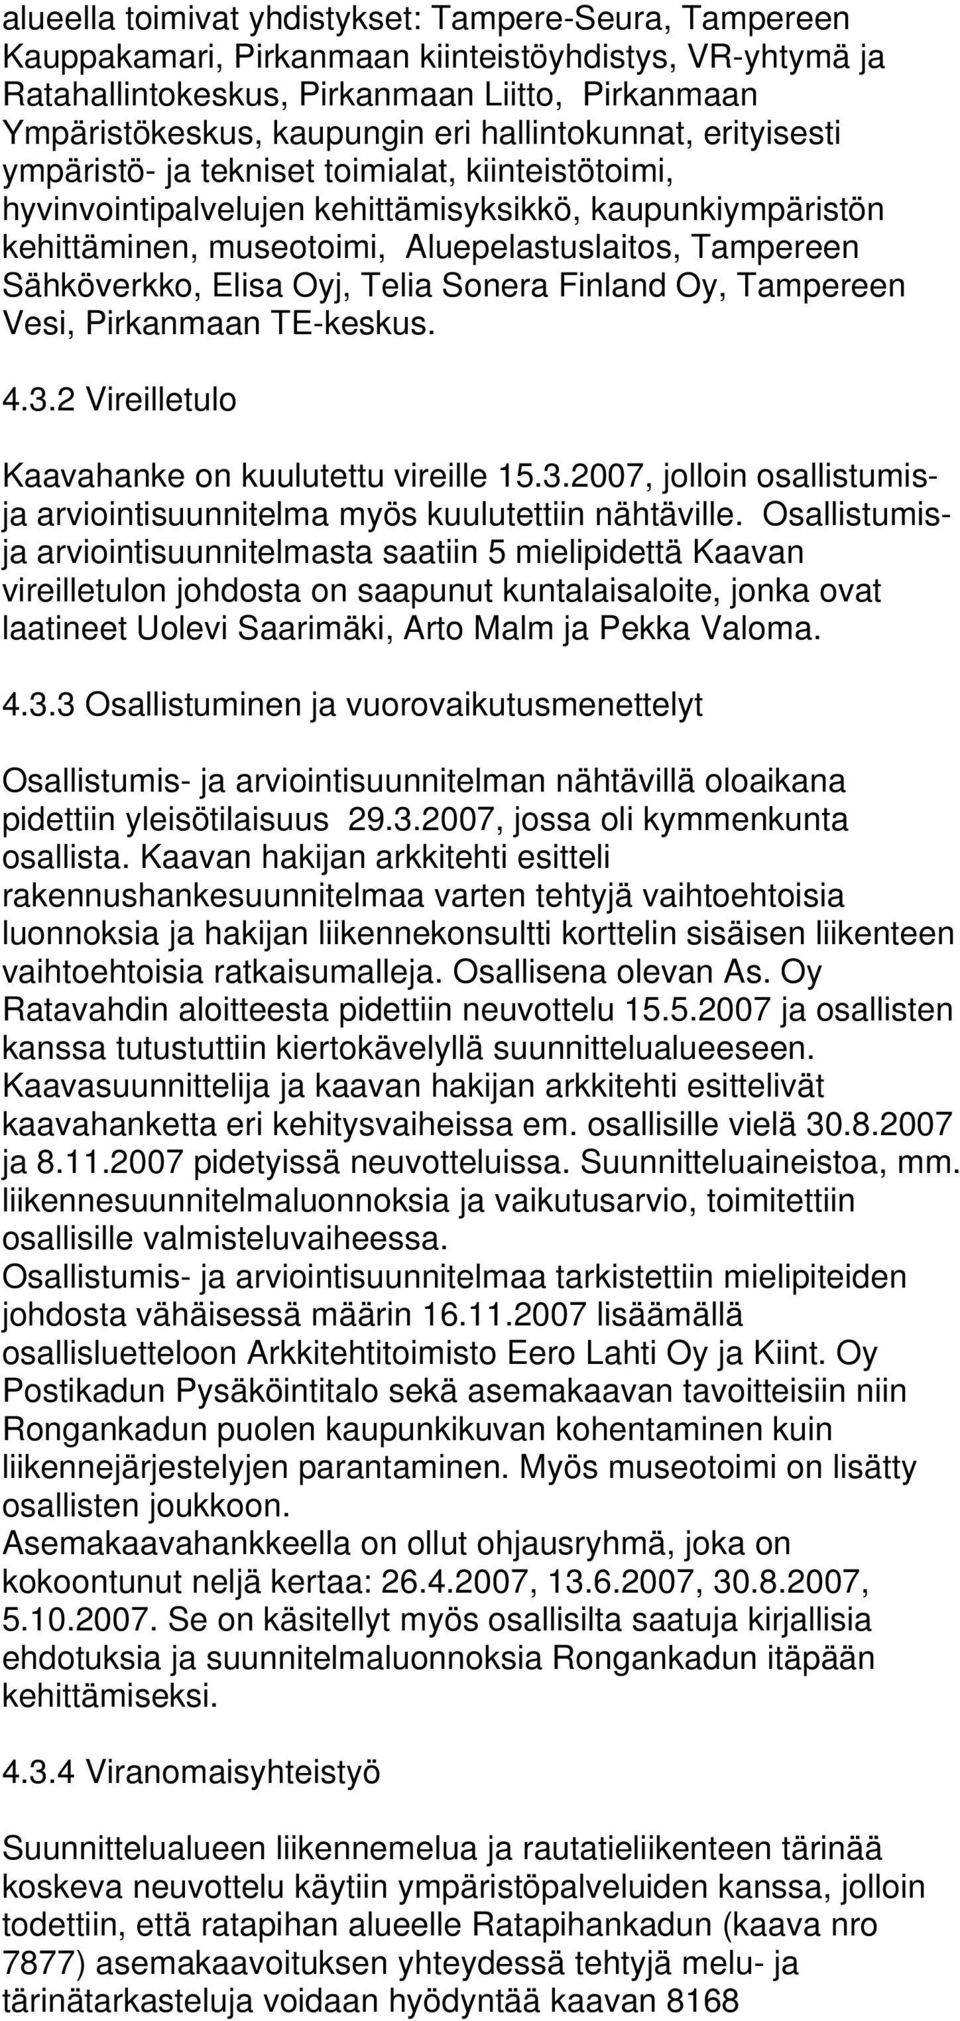 Sähköverkko, Elisa Oyj, Telia Sonera Finland Oy, Tampereen Vesi, Pirkanmaan TE-keskus. 4.3.2 Vireilletulo Kaavahanke on kuulutettu vireille 15.3.2007, jolloin osallistumisja arviointisuunnitelma myös kuulutettiin nähtäville.